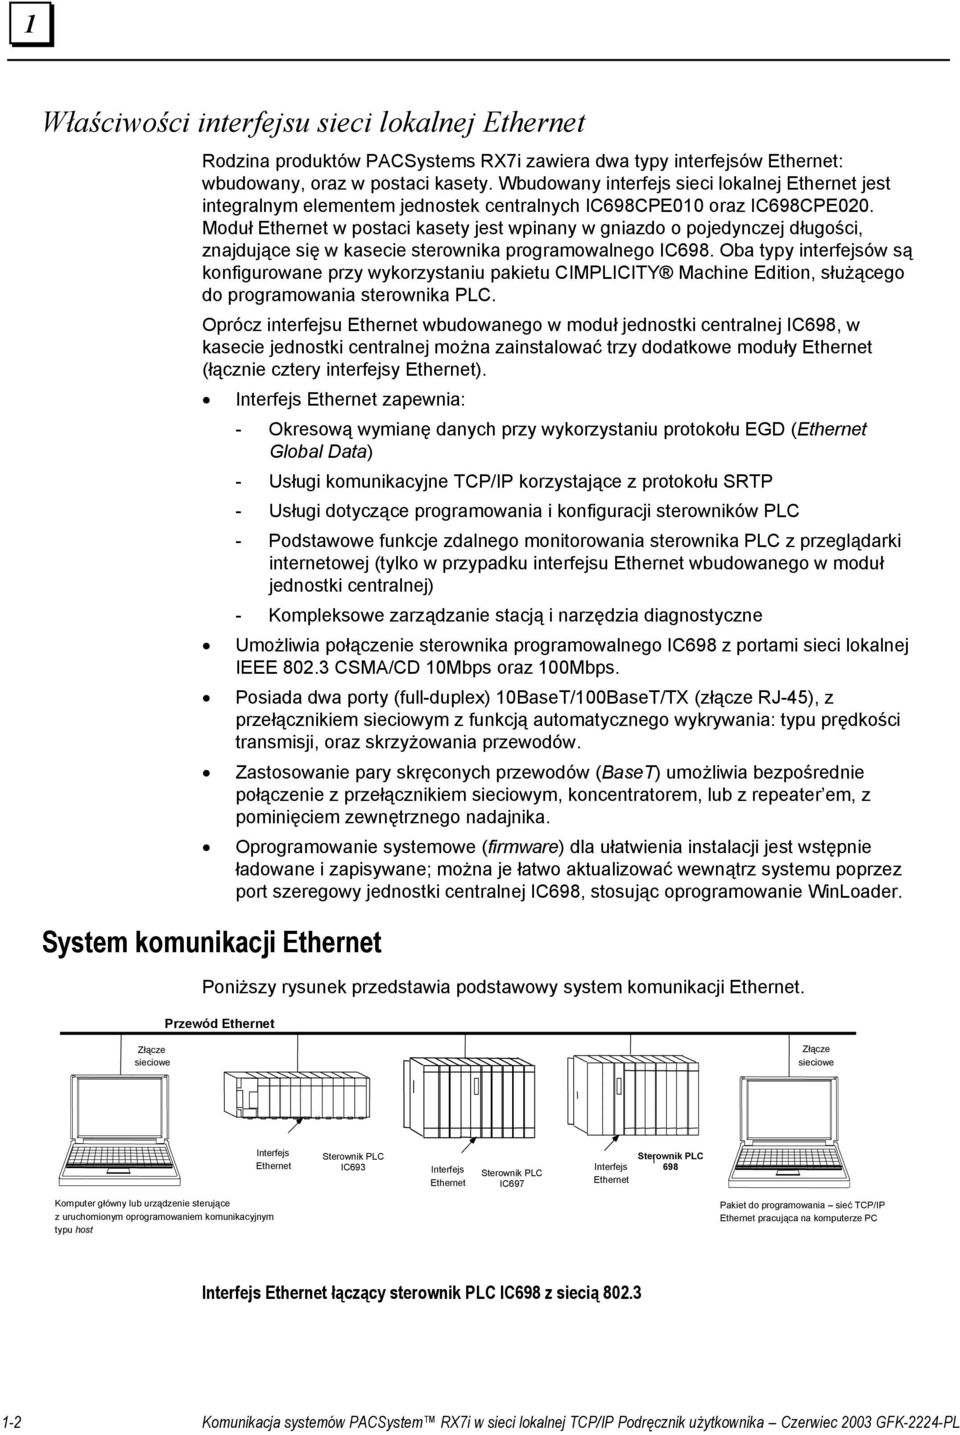 Moduł Ethernet w postaci kasety jest wpinany w gniazdo o pojedynczej długości, znajdujące się w kasecie sterownika programowalnego IC698.